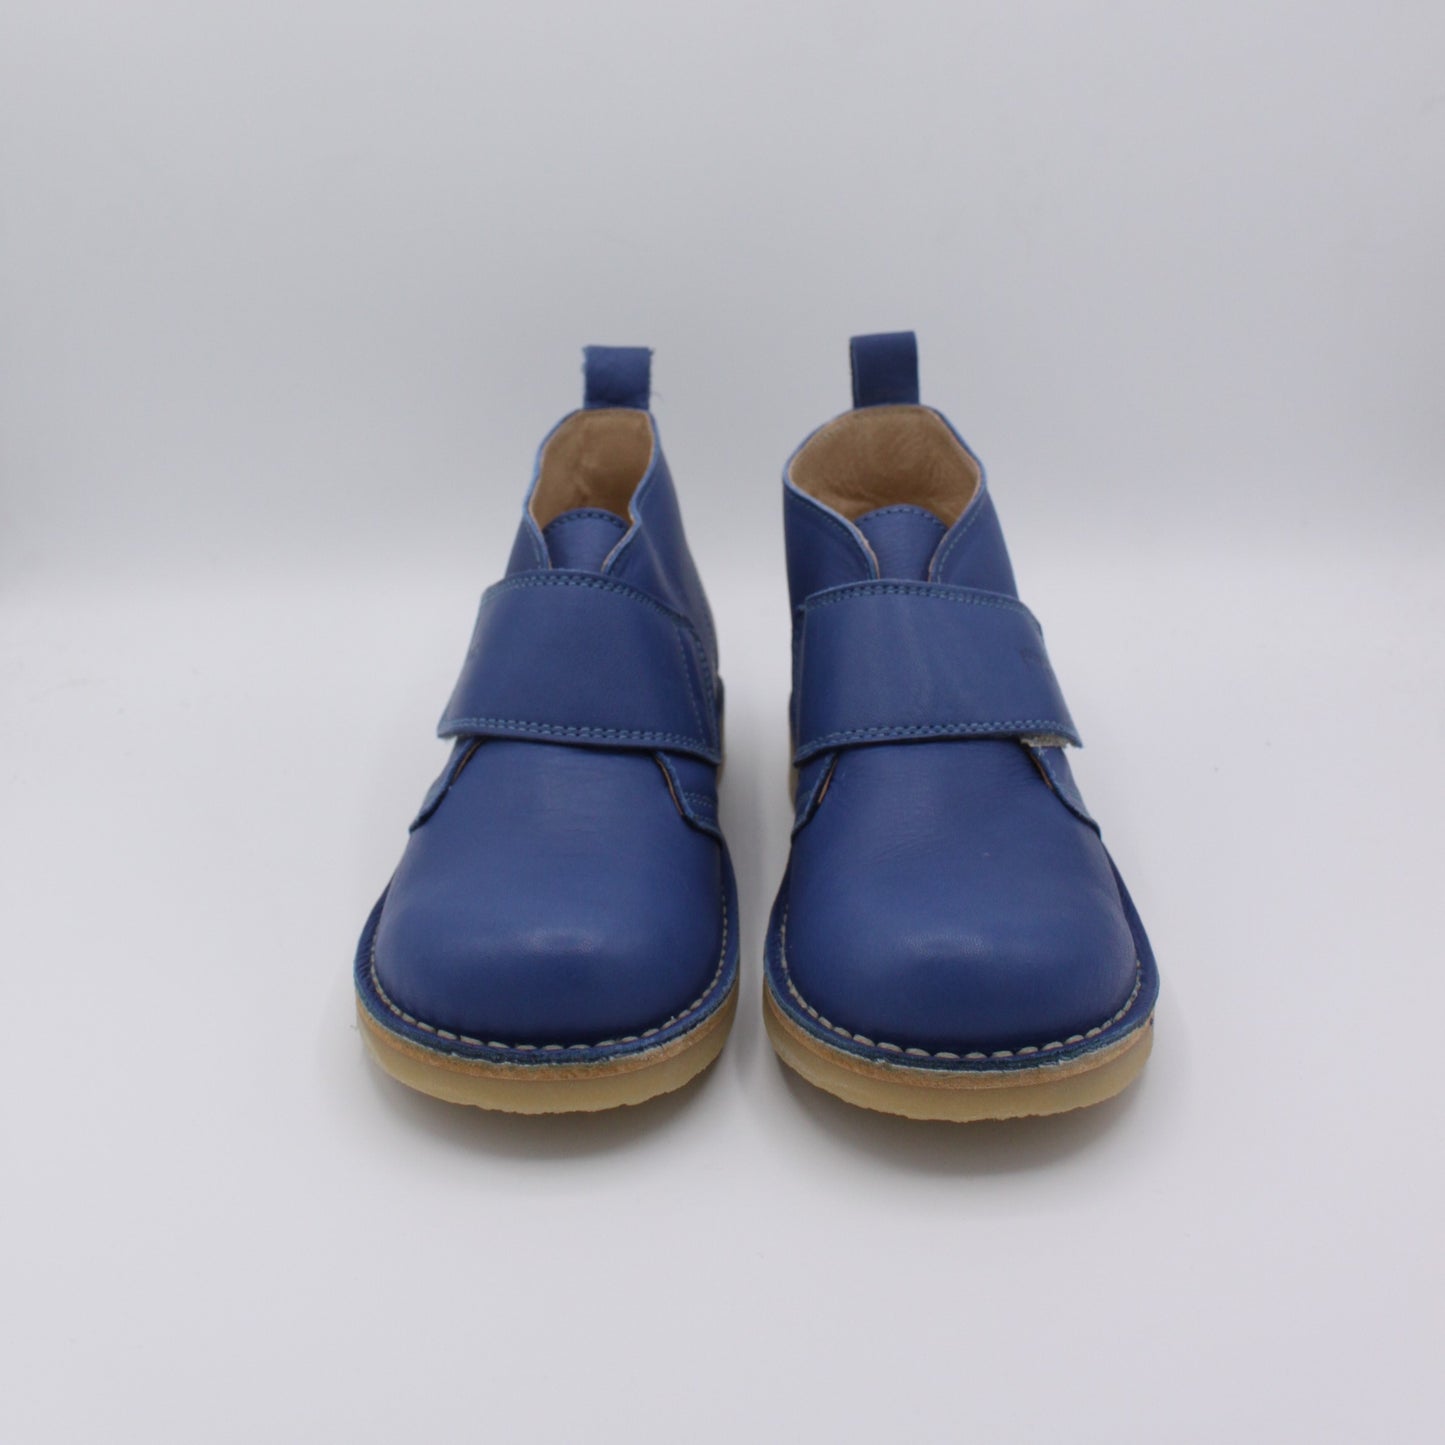 POMPOM Pre-loved Boots (EU32)